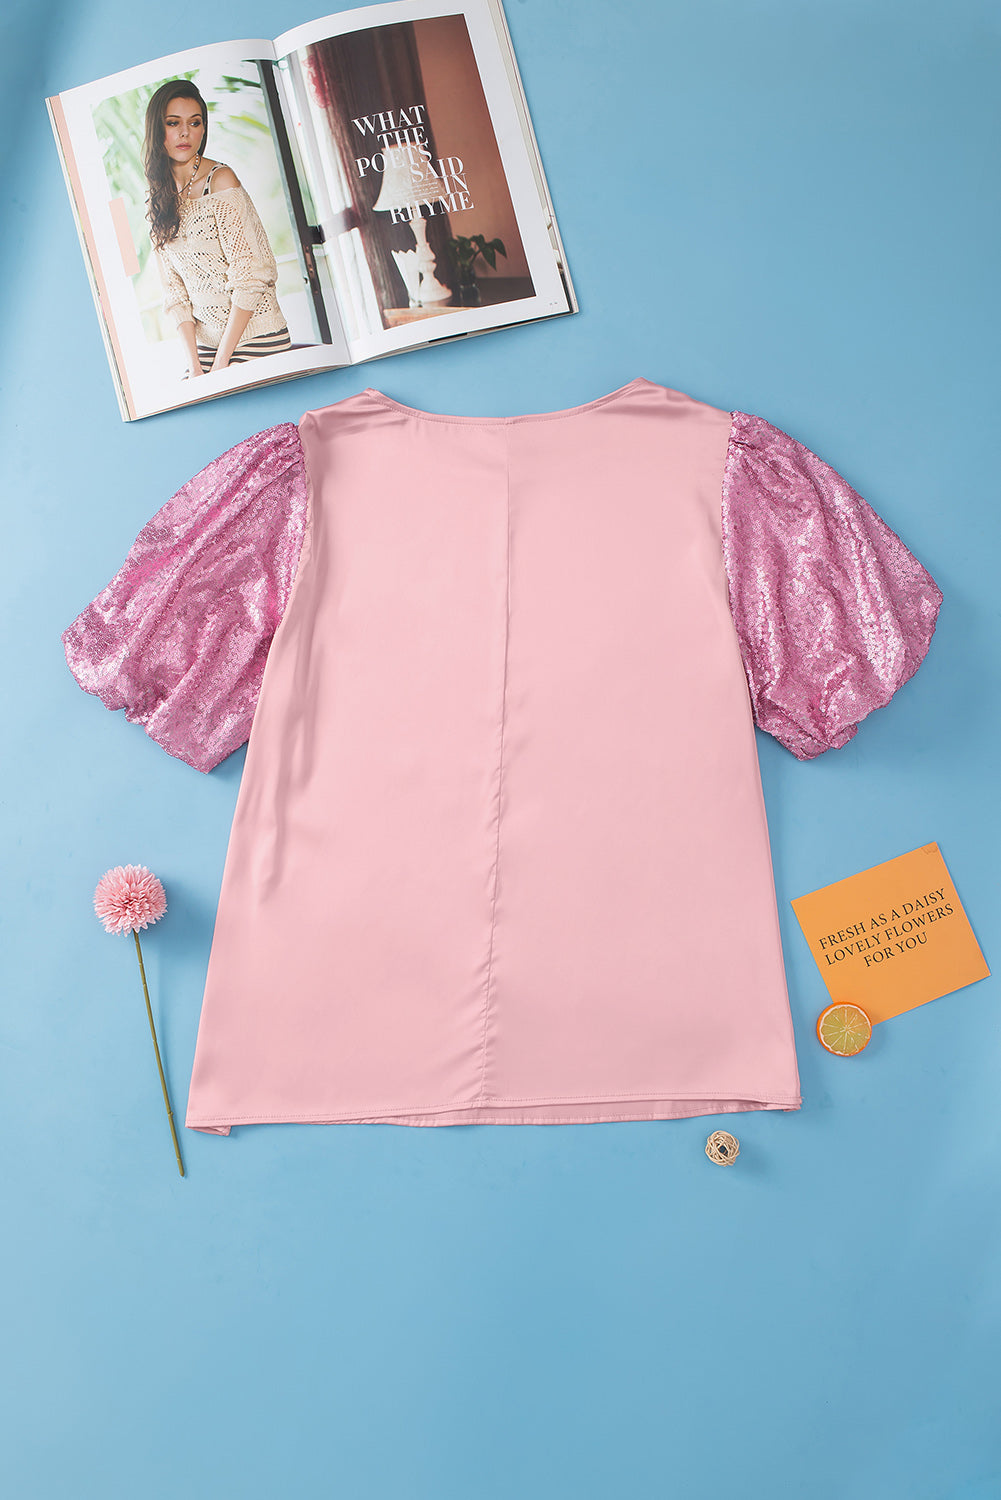 Rožnata majica velike velikosti z bleščicami in mehurčki